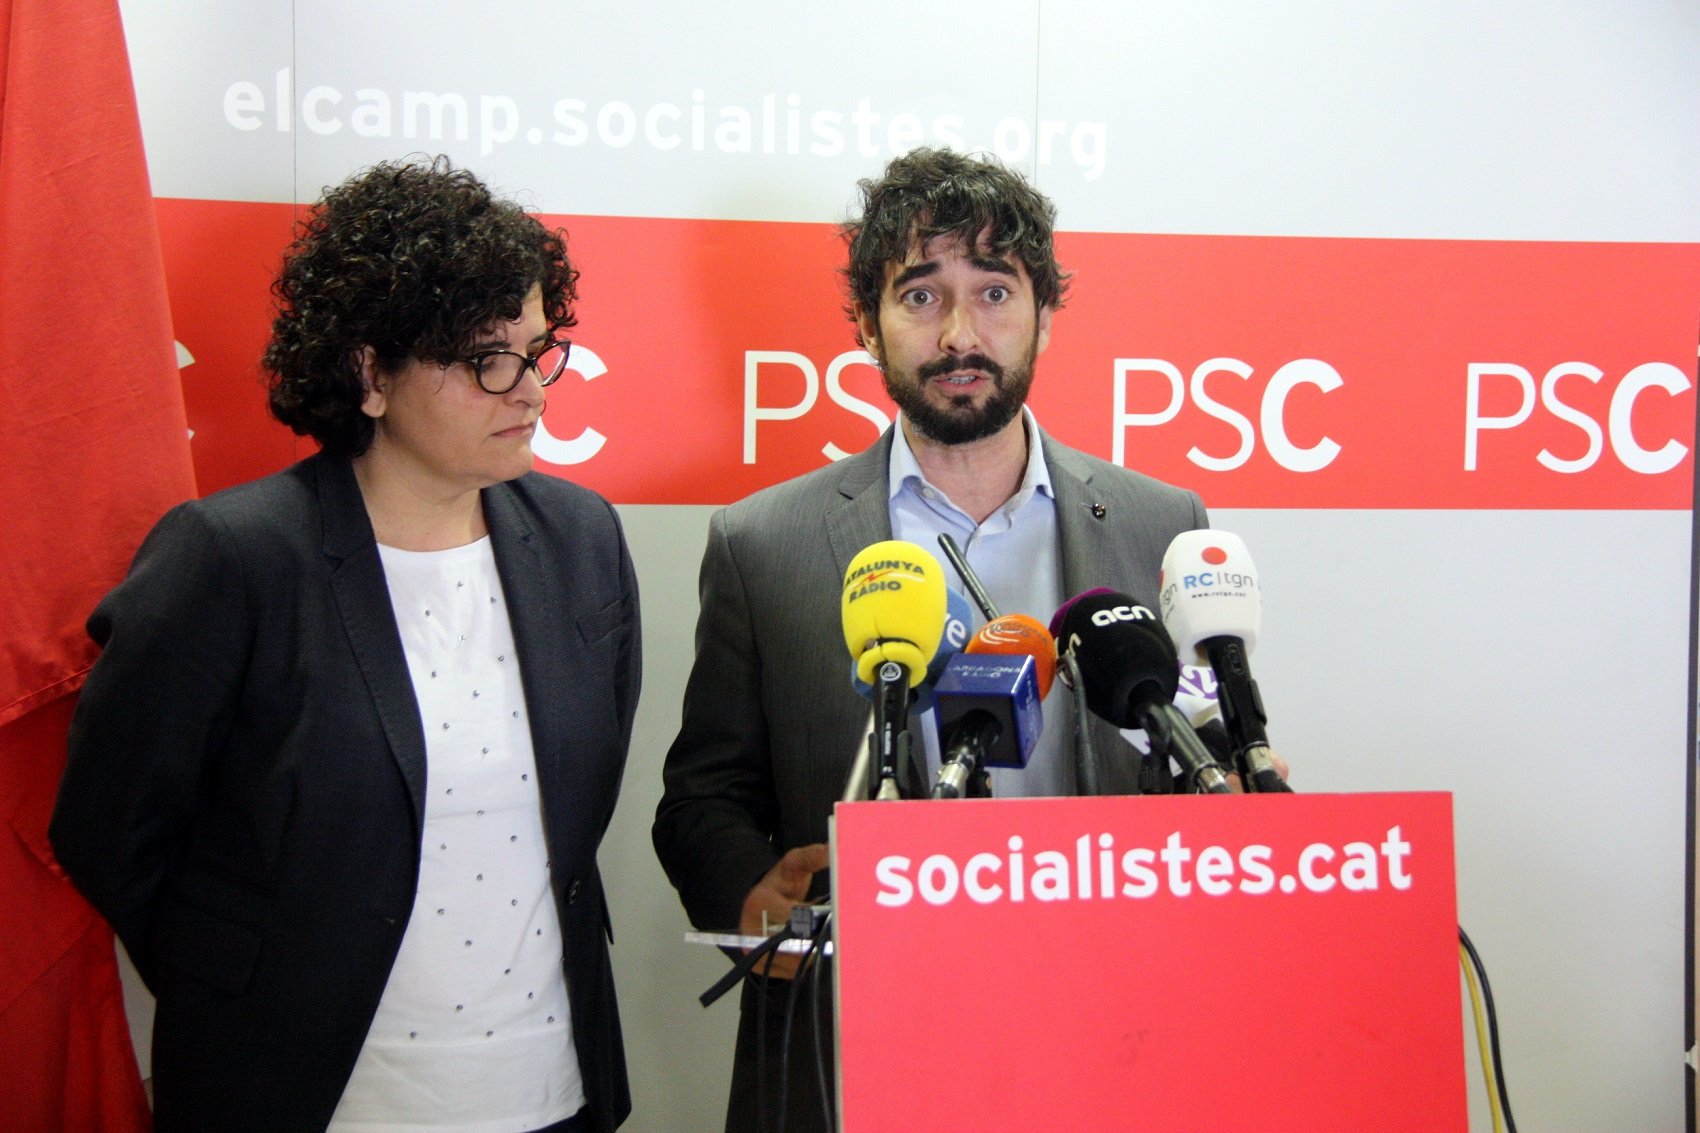 ERC fitxa un no independentista ex-PSC per les llistes a Tarragona